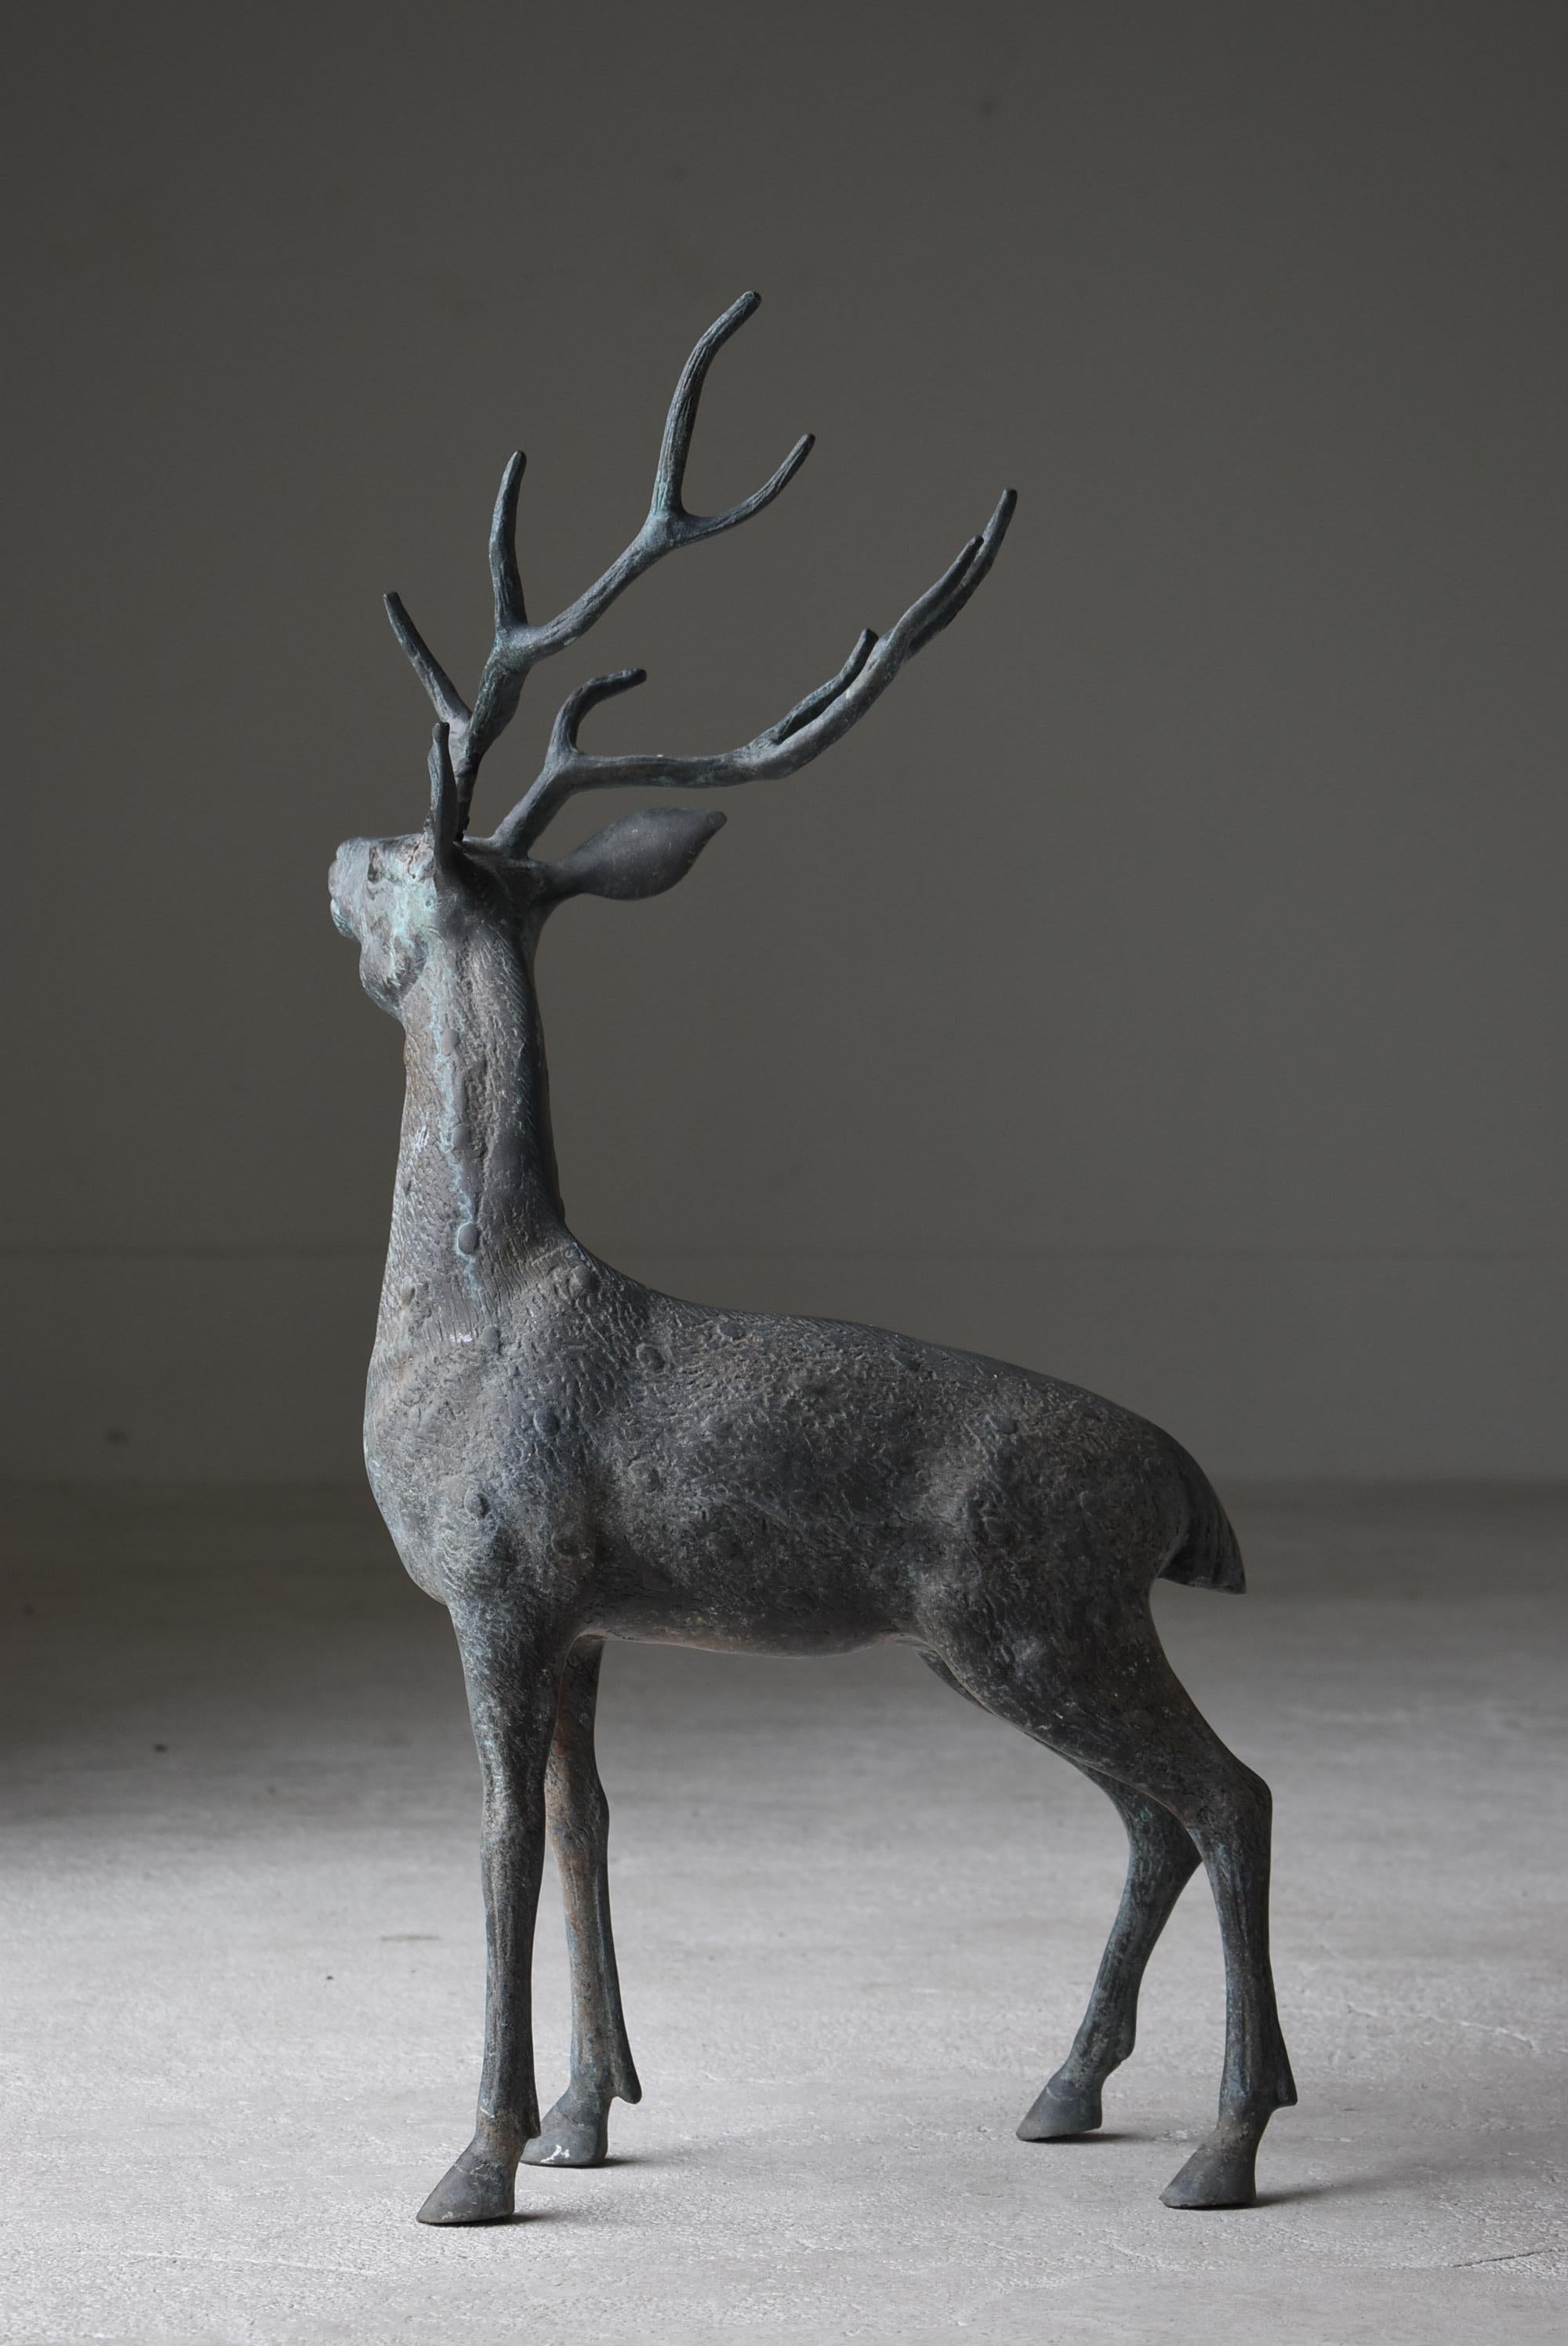 Japanese Old Copper Deer Object/Vintage Figurine Animal Decor Decoration Art 6